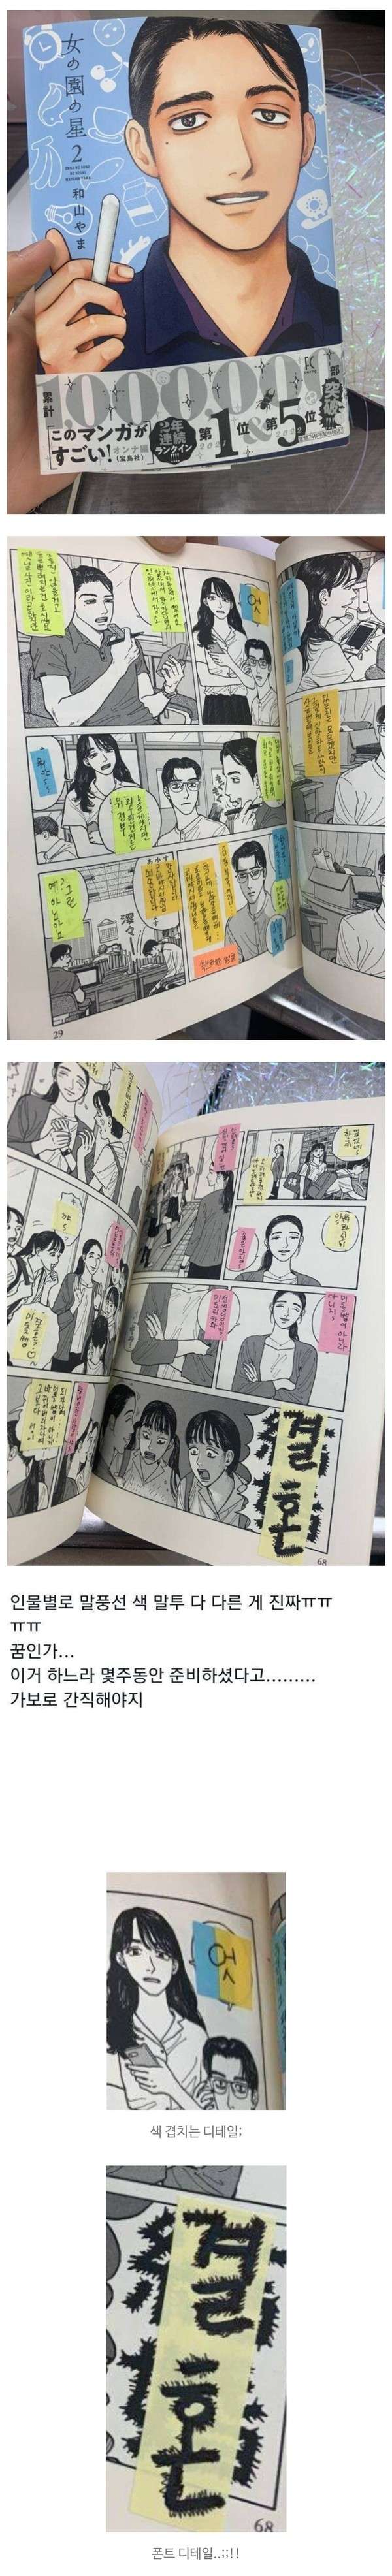 일본 만화책 직접 번역해서 선물한 선배